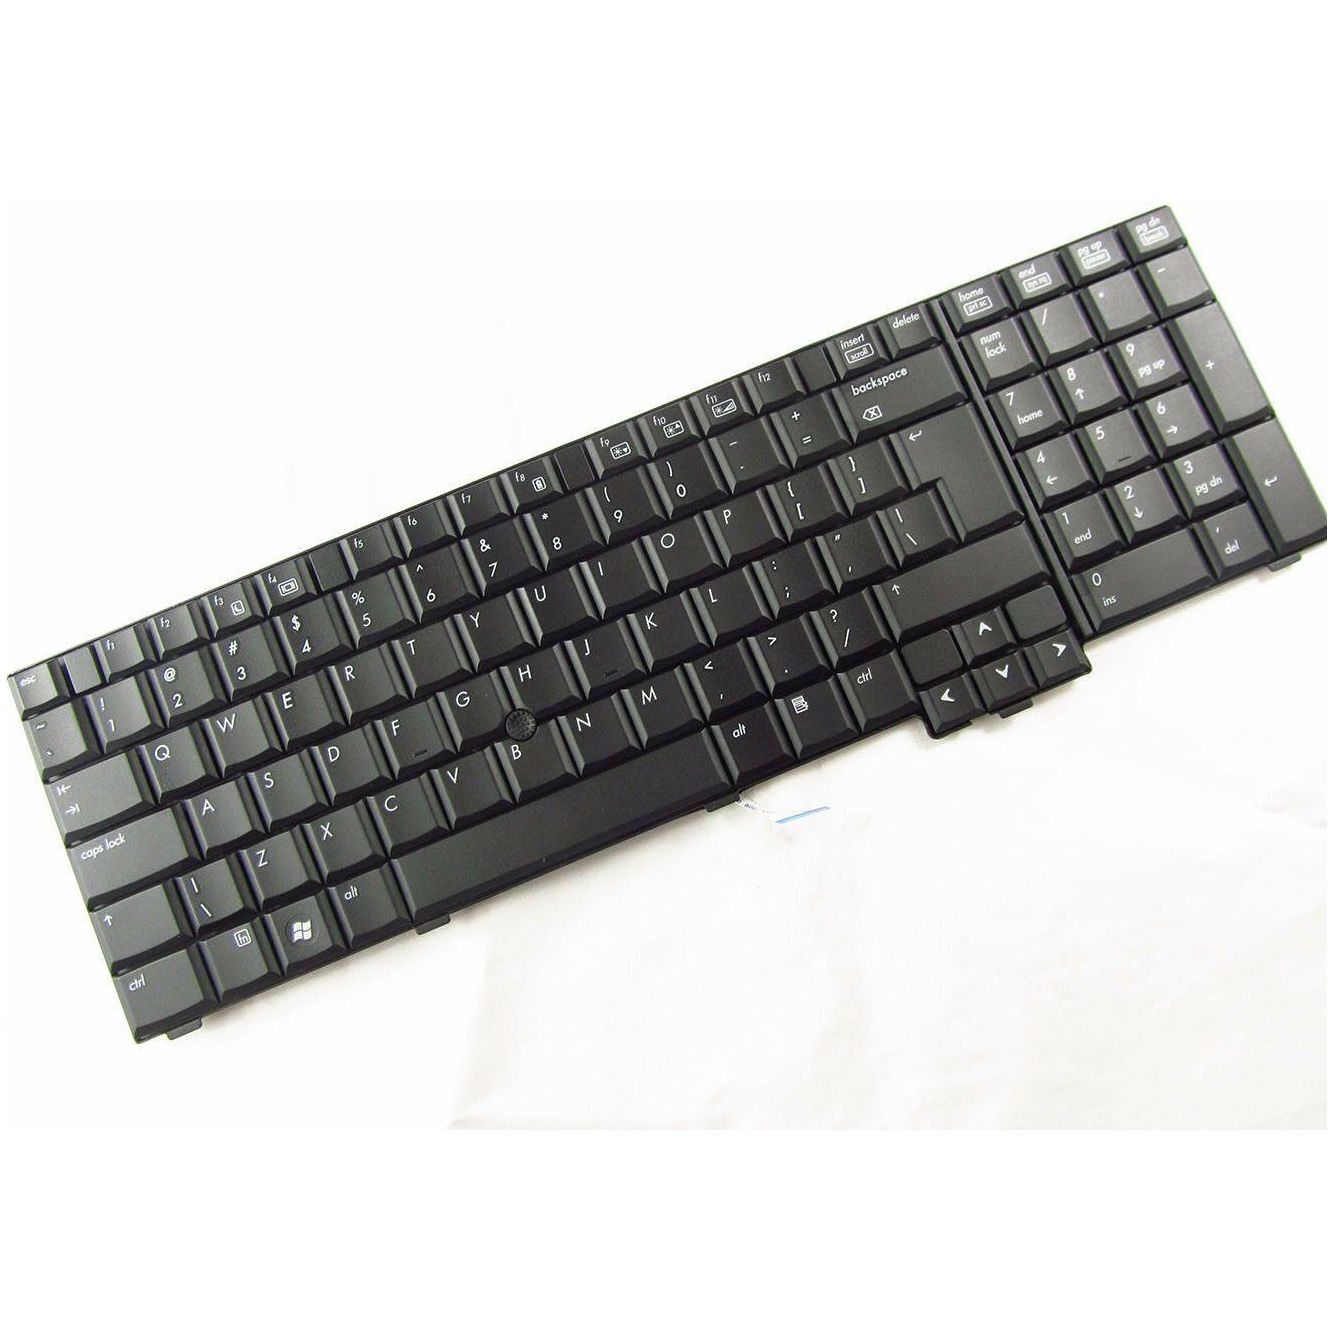 hp elitebook 8730w keyboard